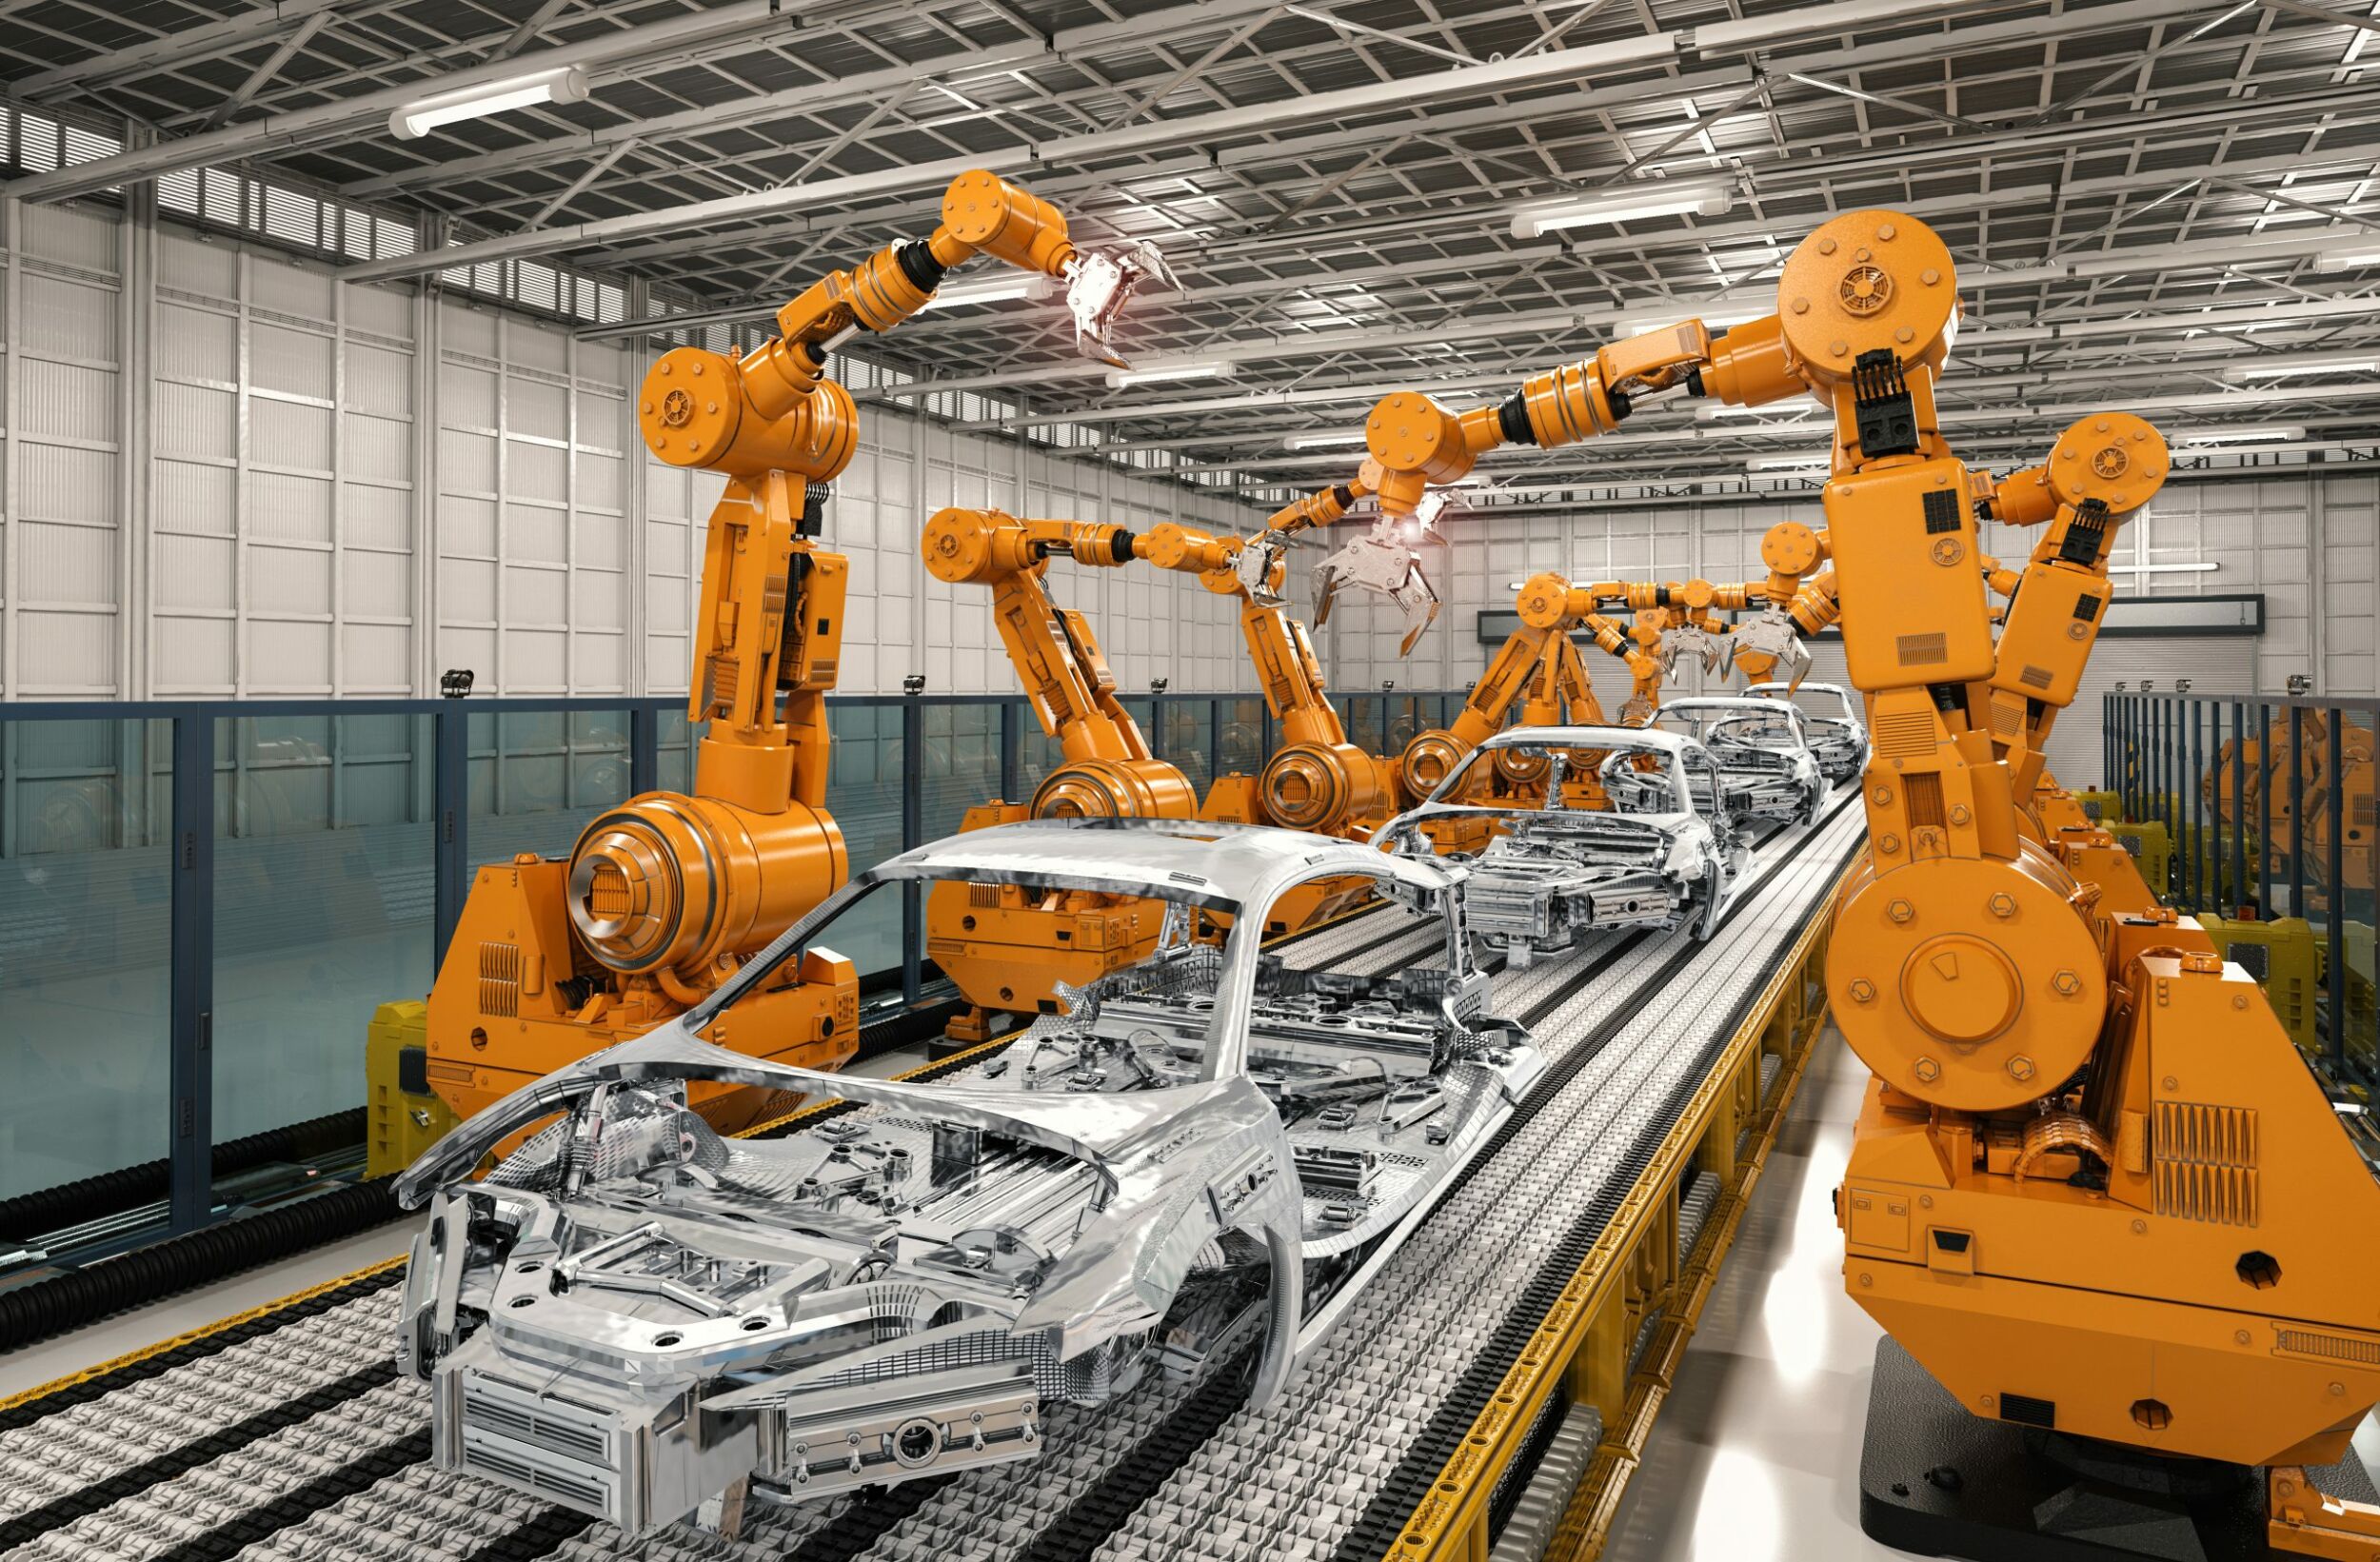 Machine Vision unterstützt die zunehmende Automatisierung in der Automobilindustrie. (Bild: ©phonlamaiphoto/stock.adobe.com)